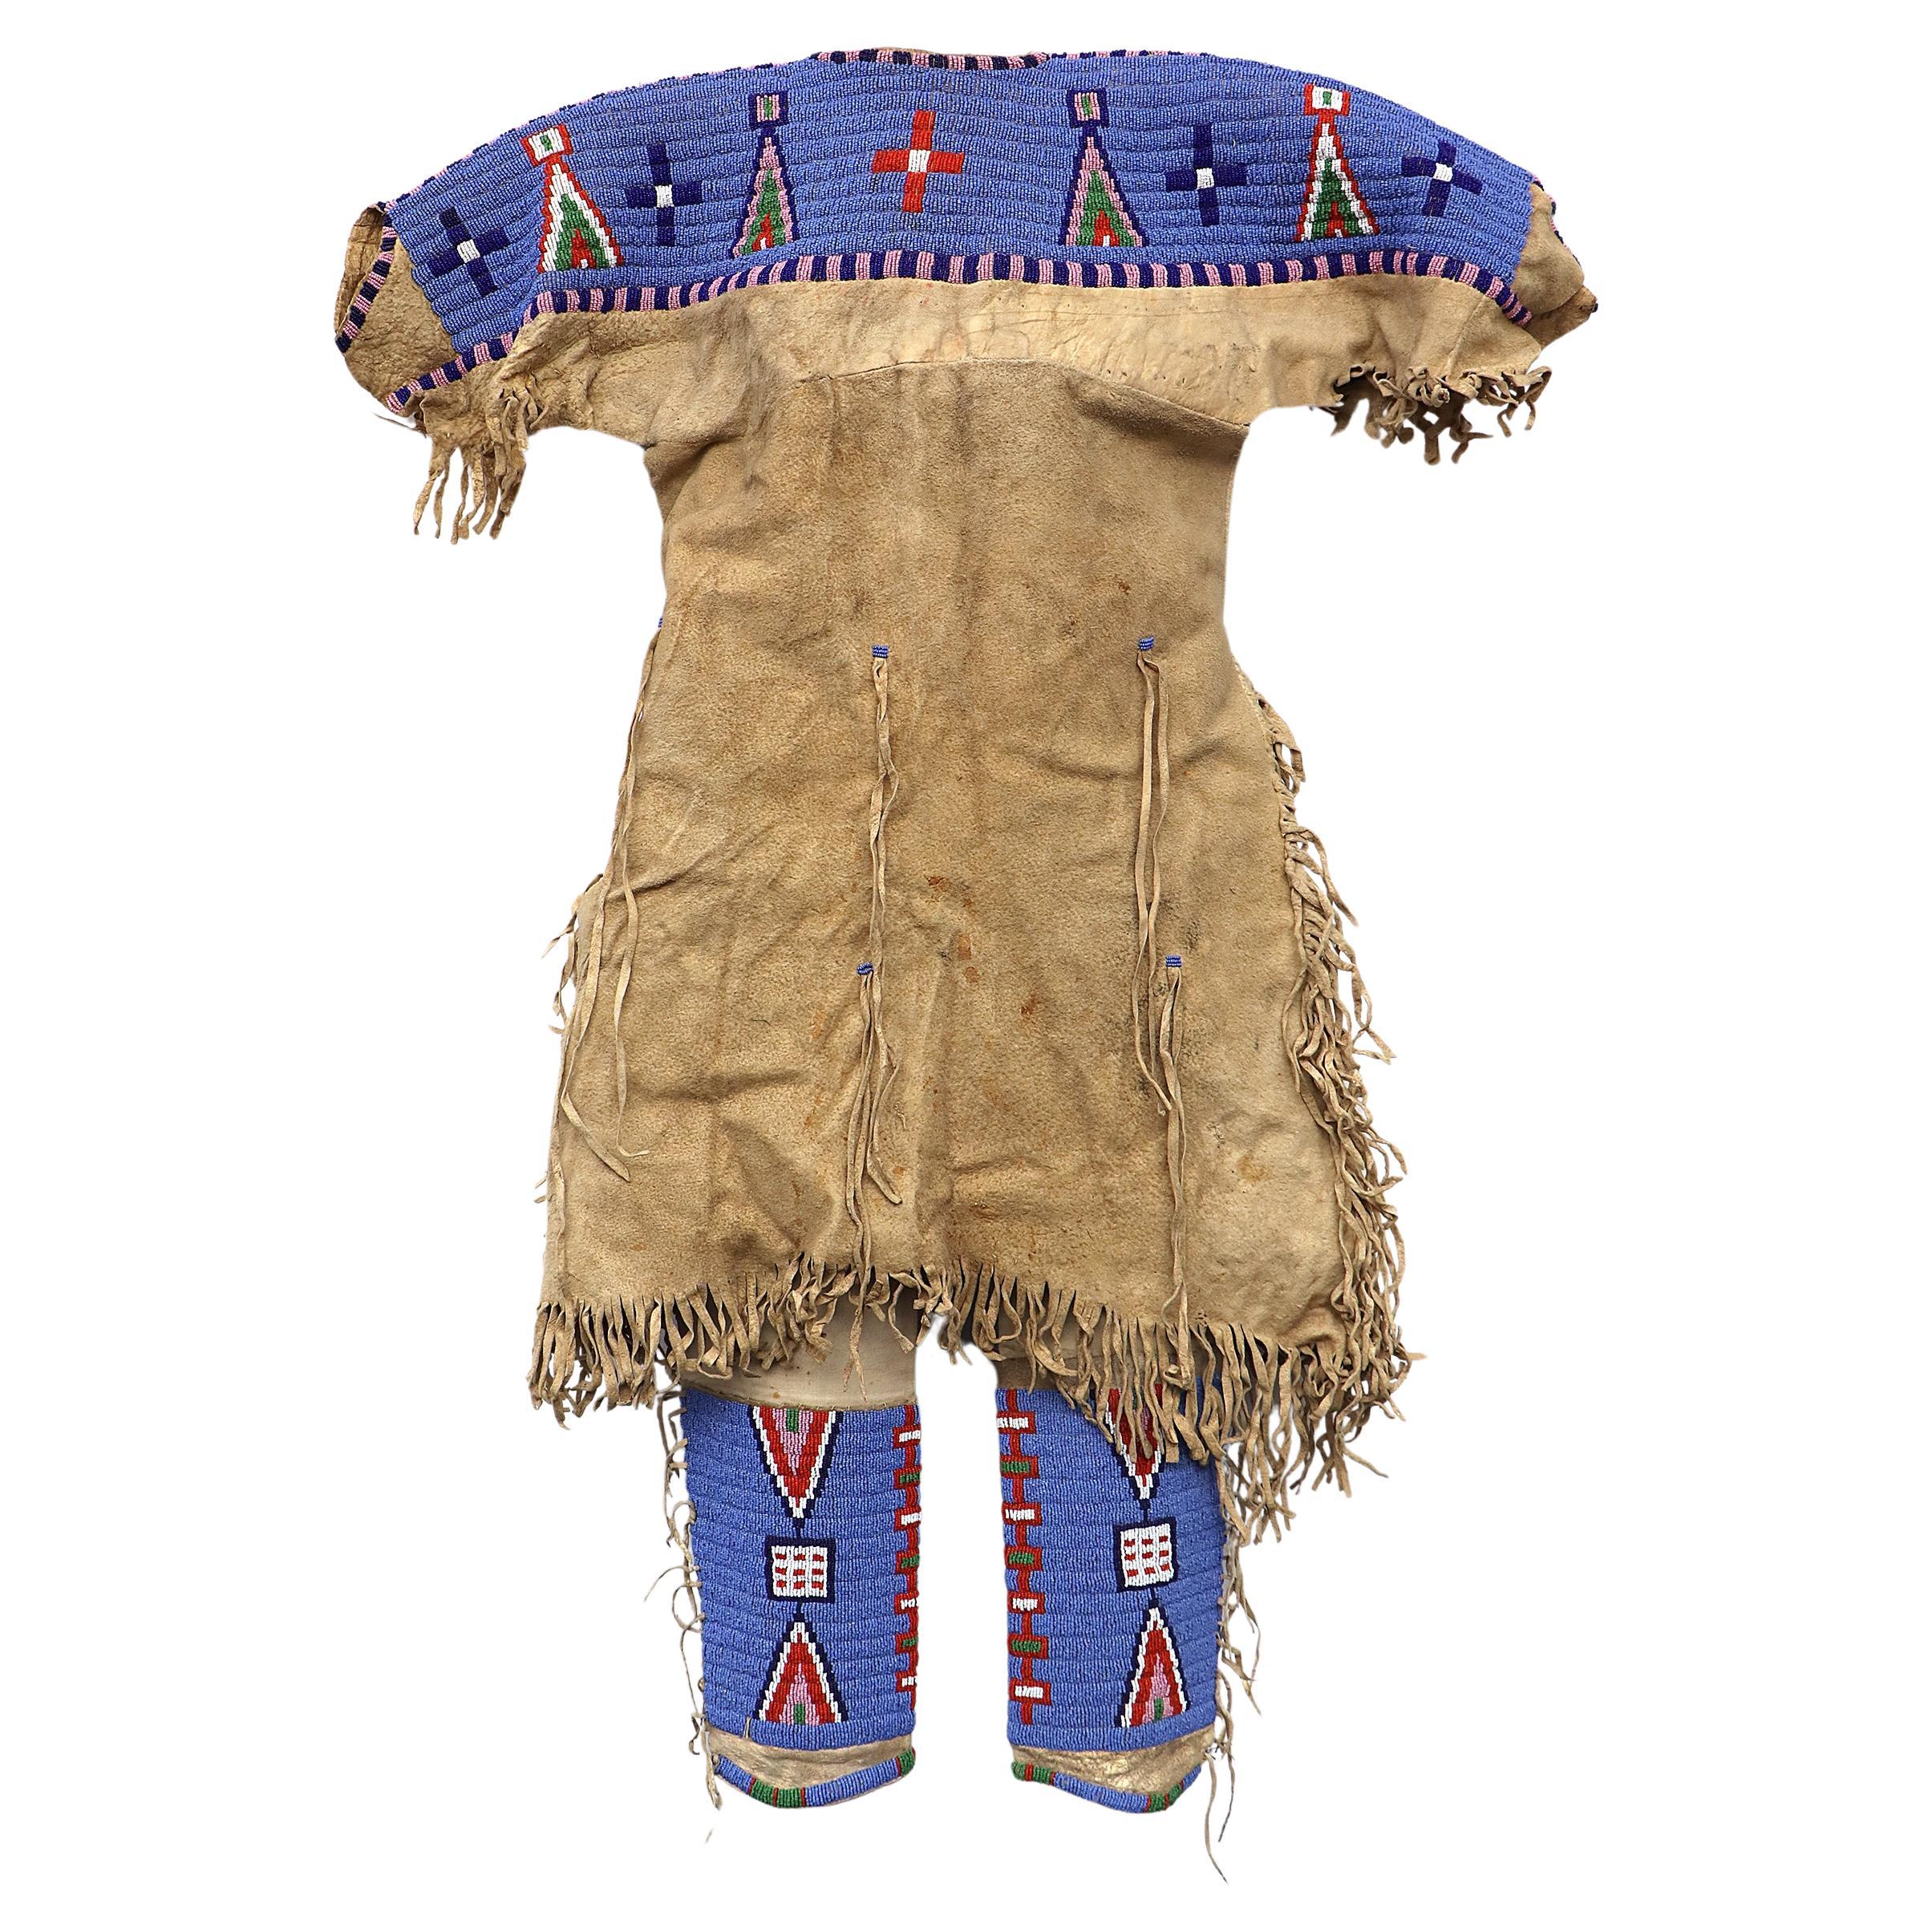 Robe et jambières anciennes en perles pour Child & Child, Sioux (Indiens des plaines) vers 1900, bleu